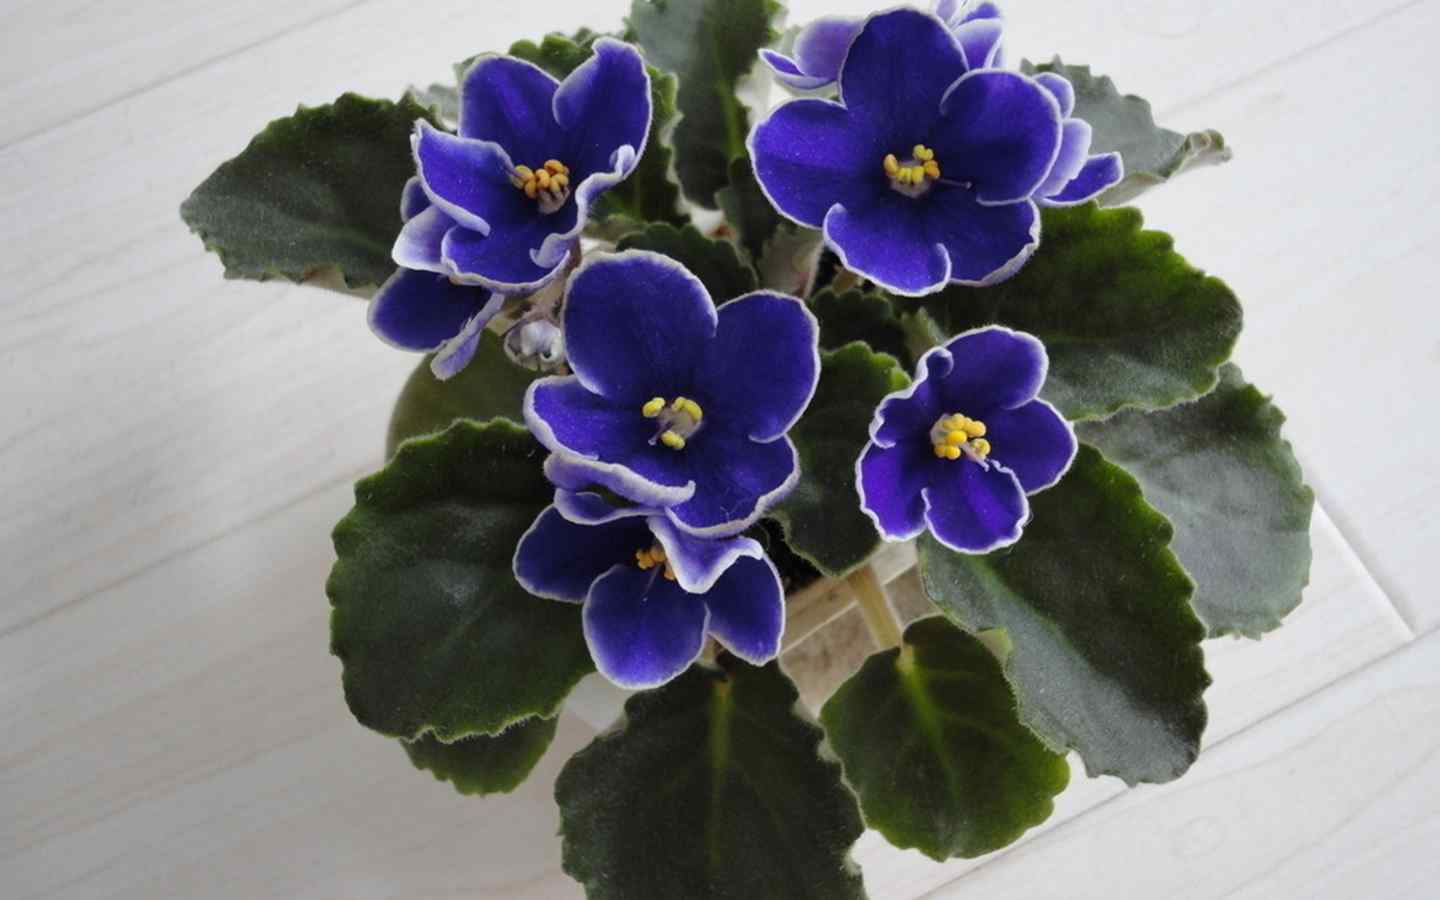 美丽盛开的紫罗兰花朵图片